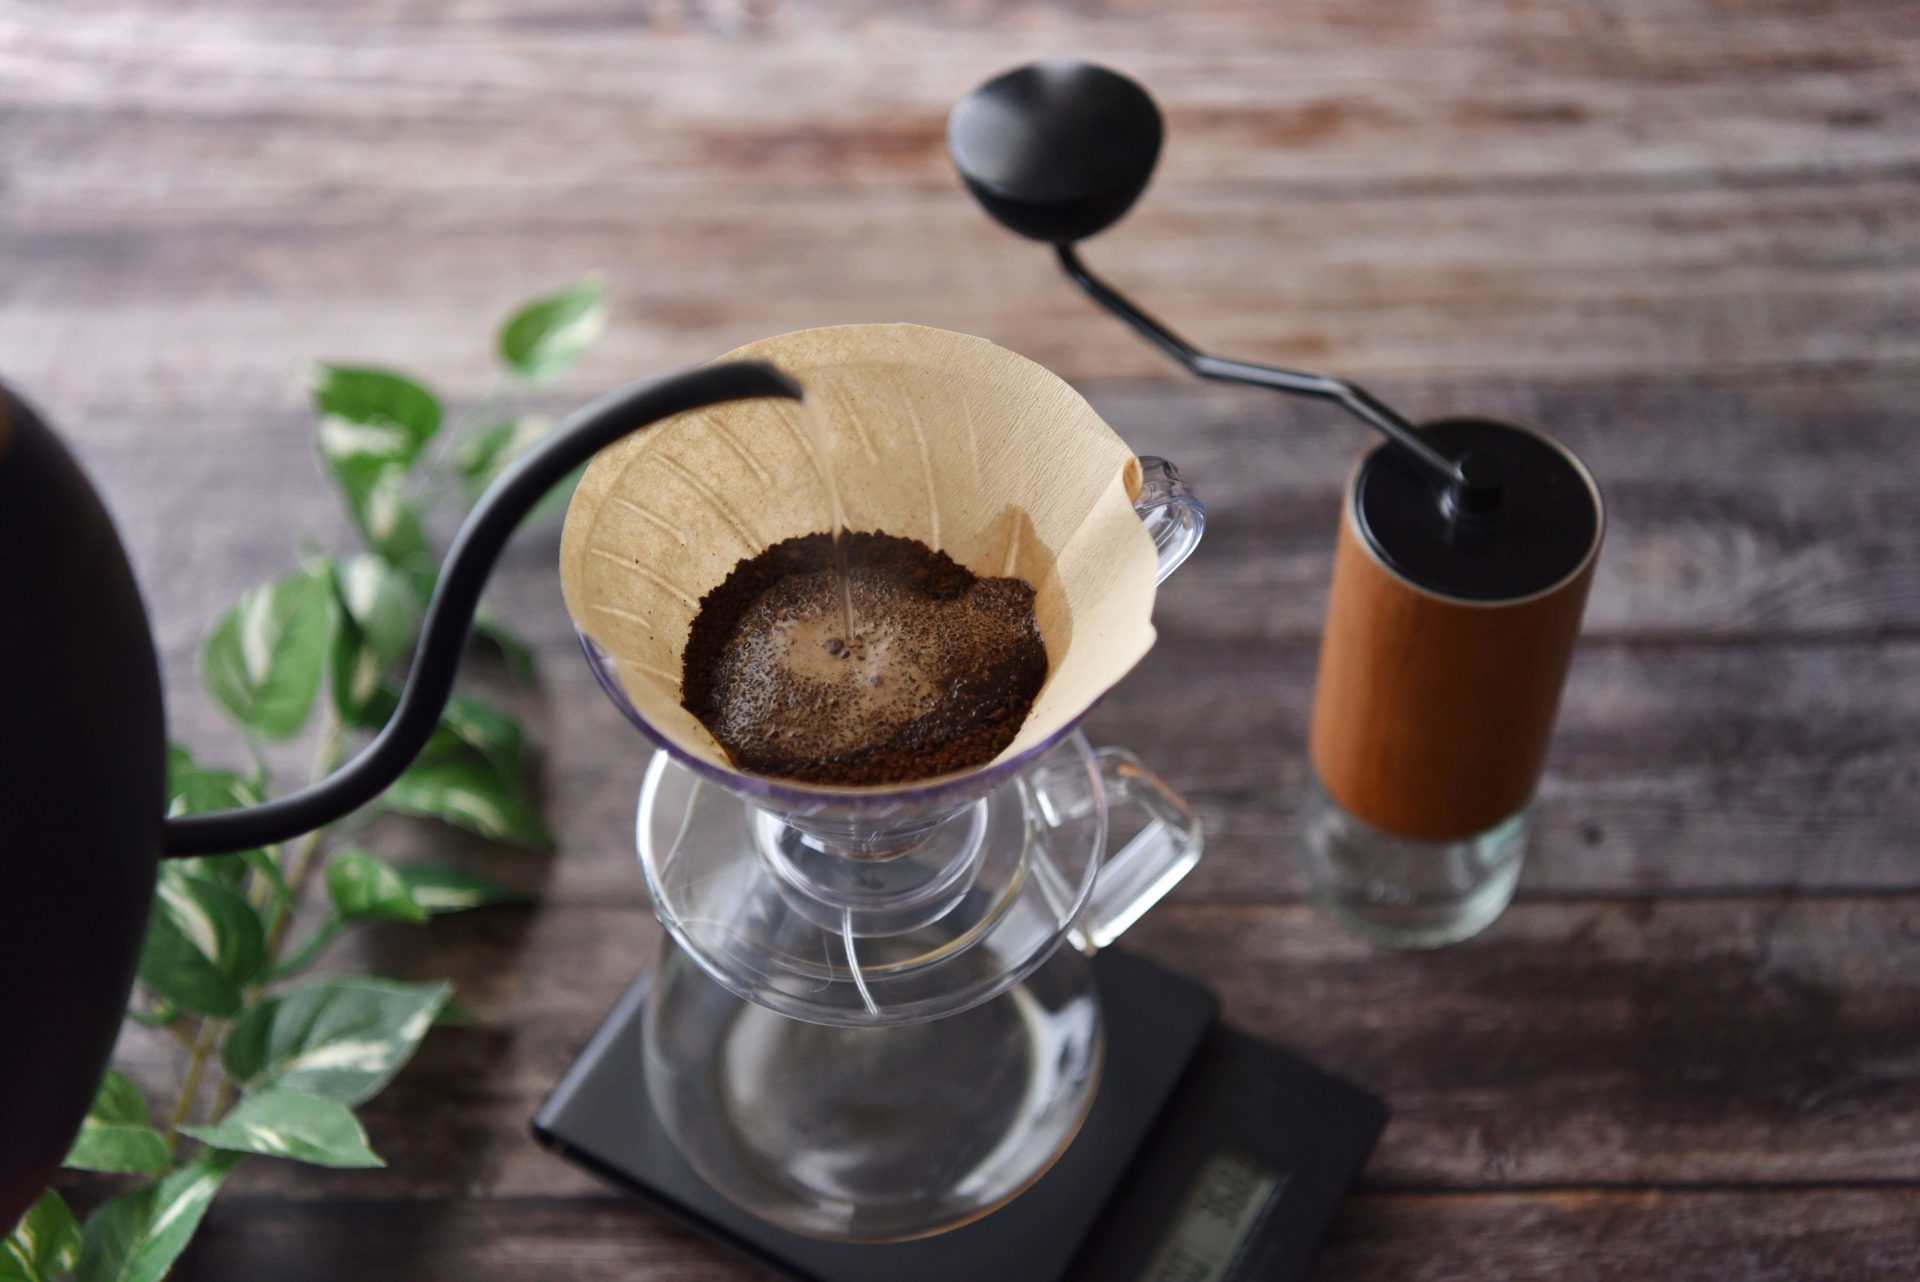 【基本編】コーヒー抽出方法6つ解説！自宅でおいしく淹れるおすすめ方法とは